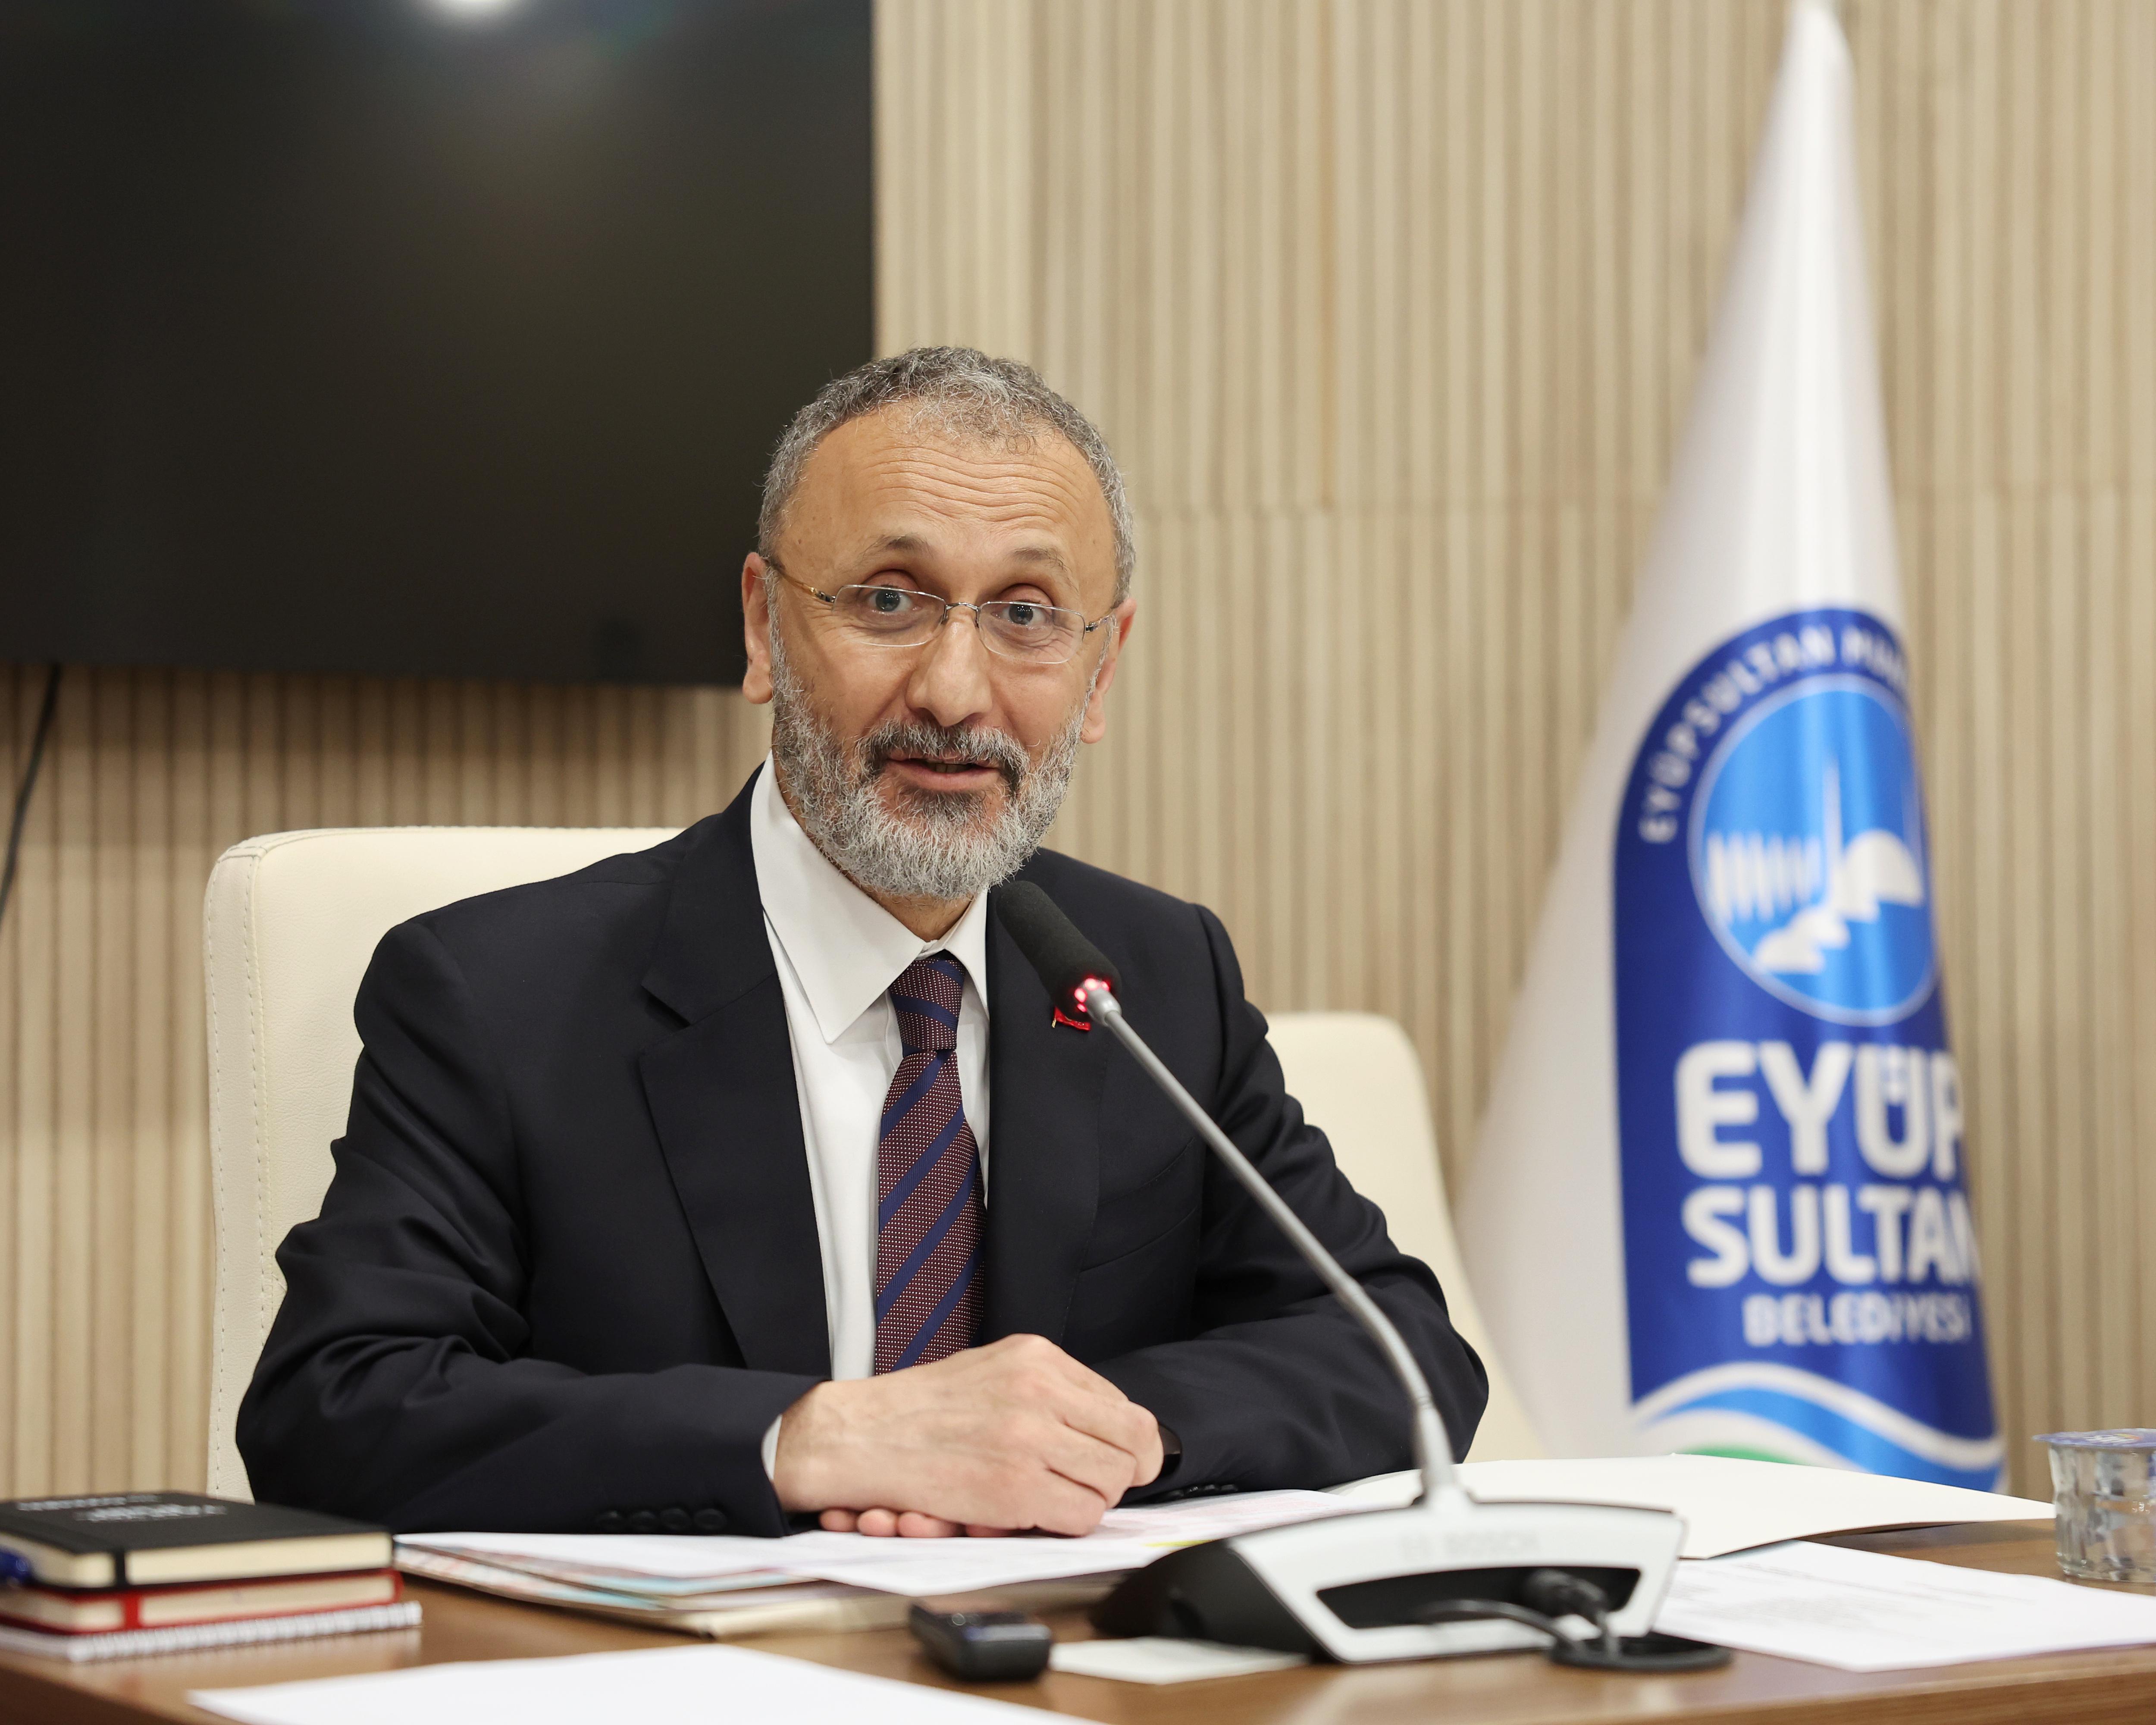 Eyüpsultan Belediye Başkanı Dr. Mithat Bülent Özmen